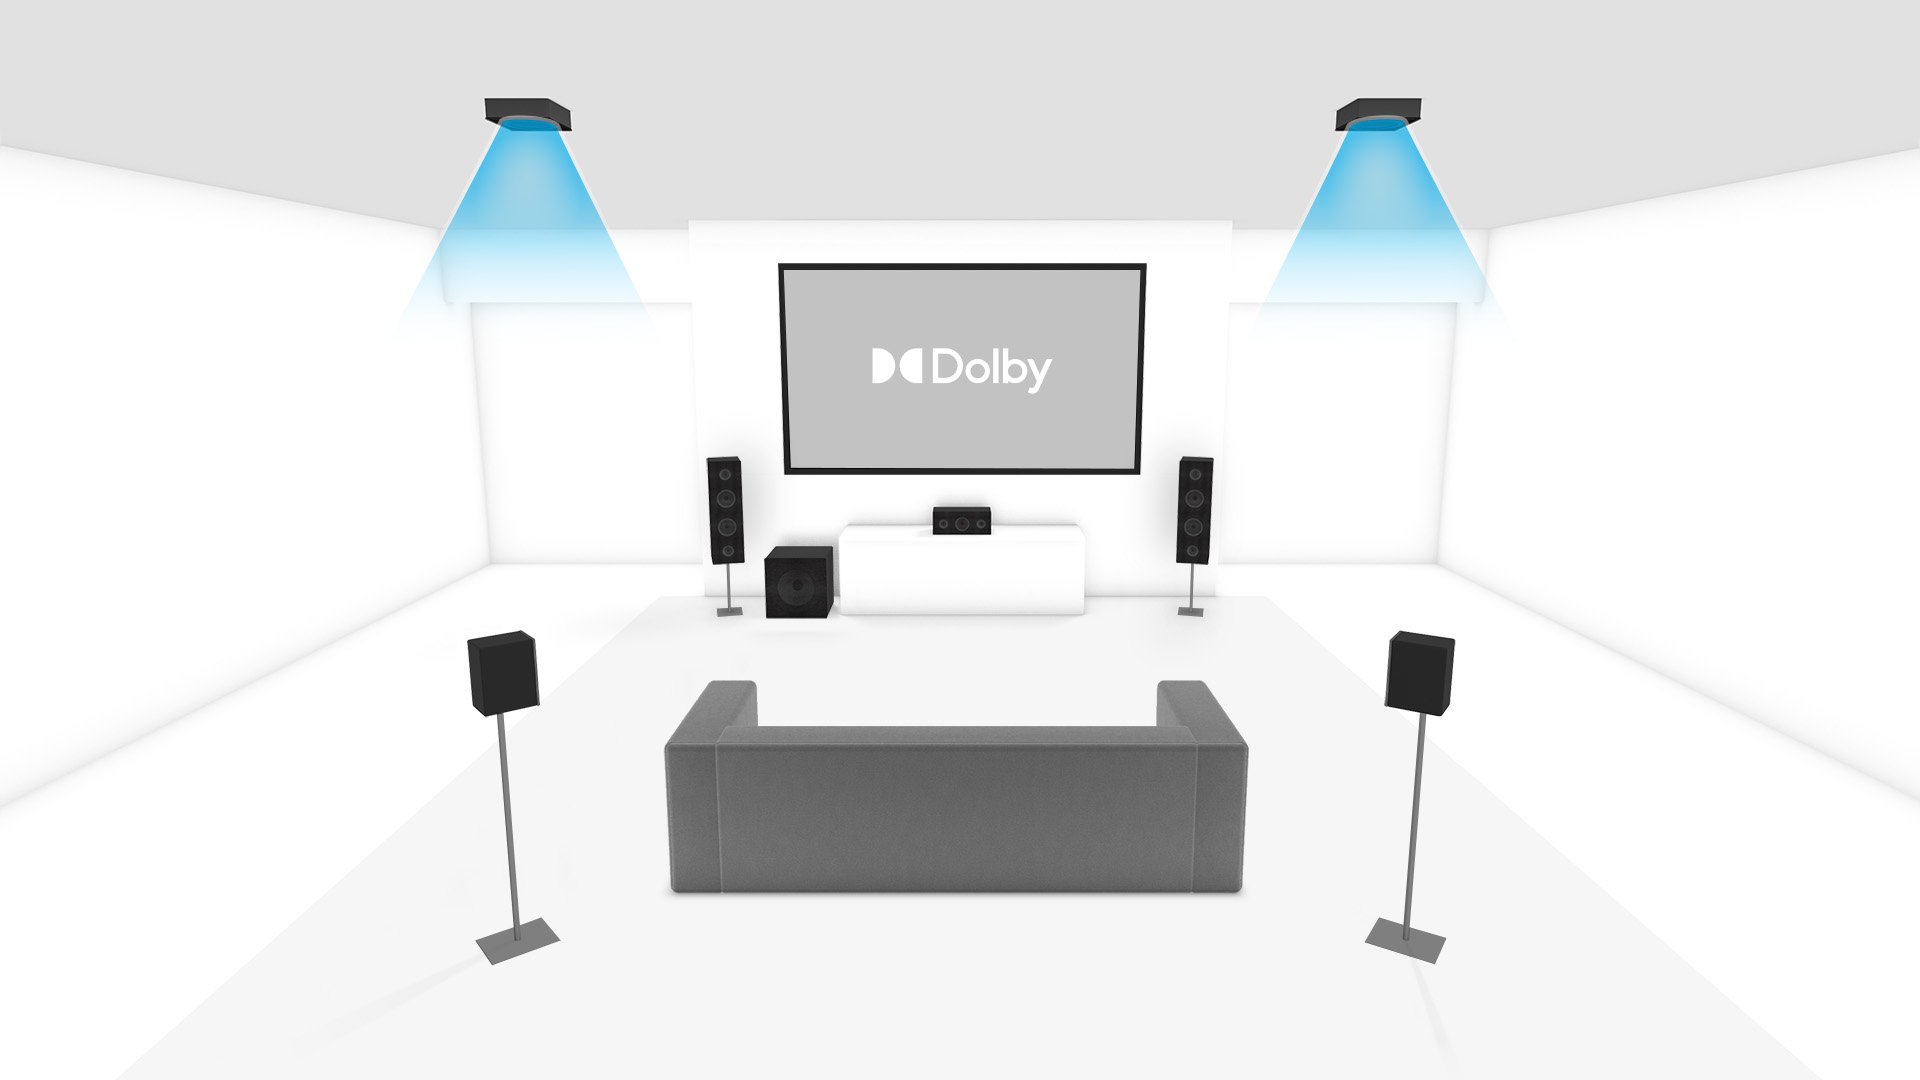 dolby 5.1 speakers